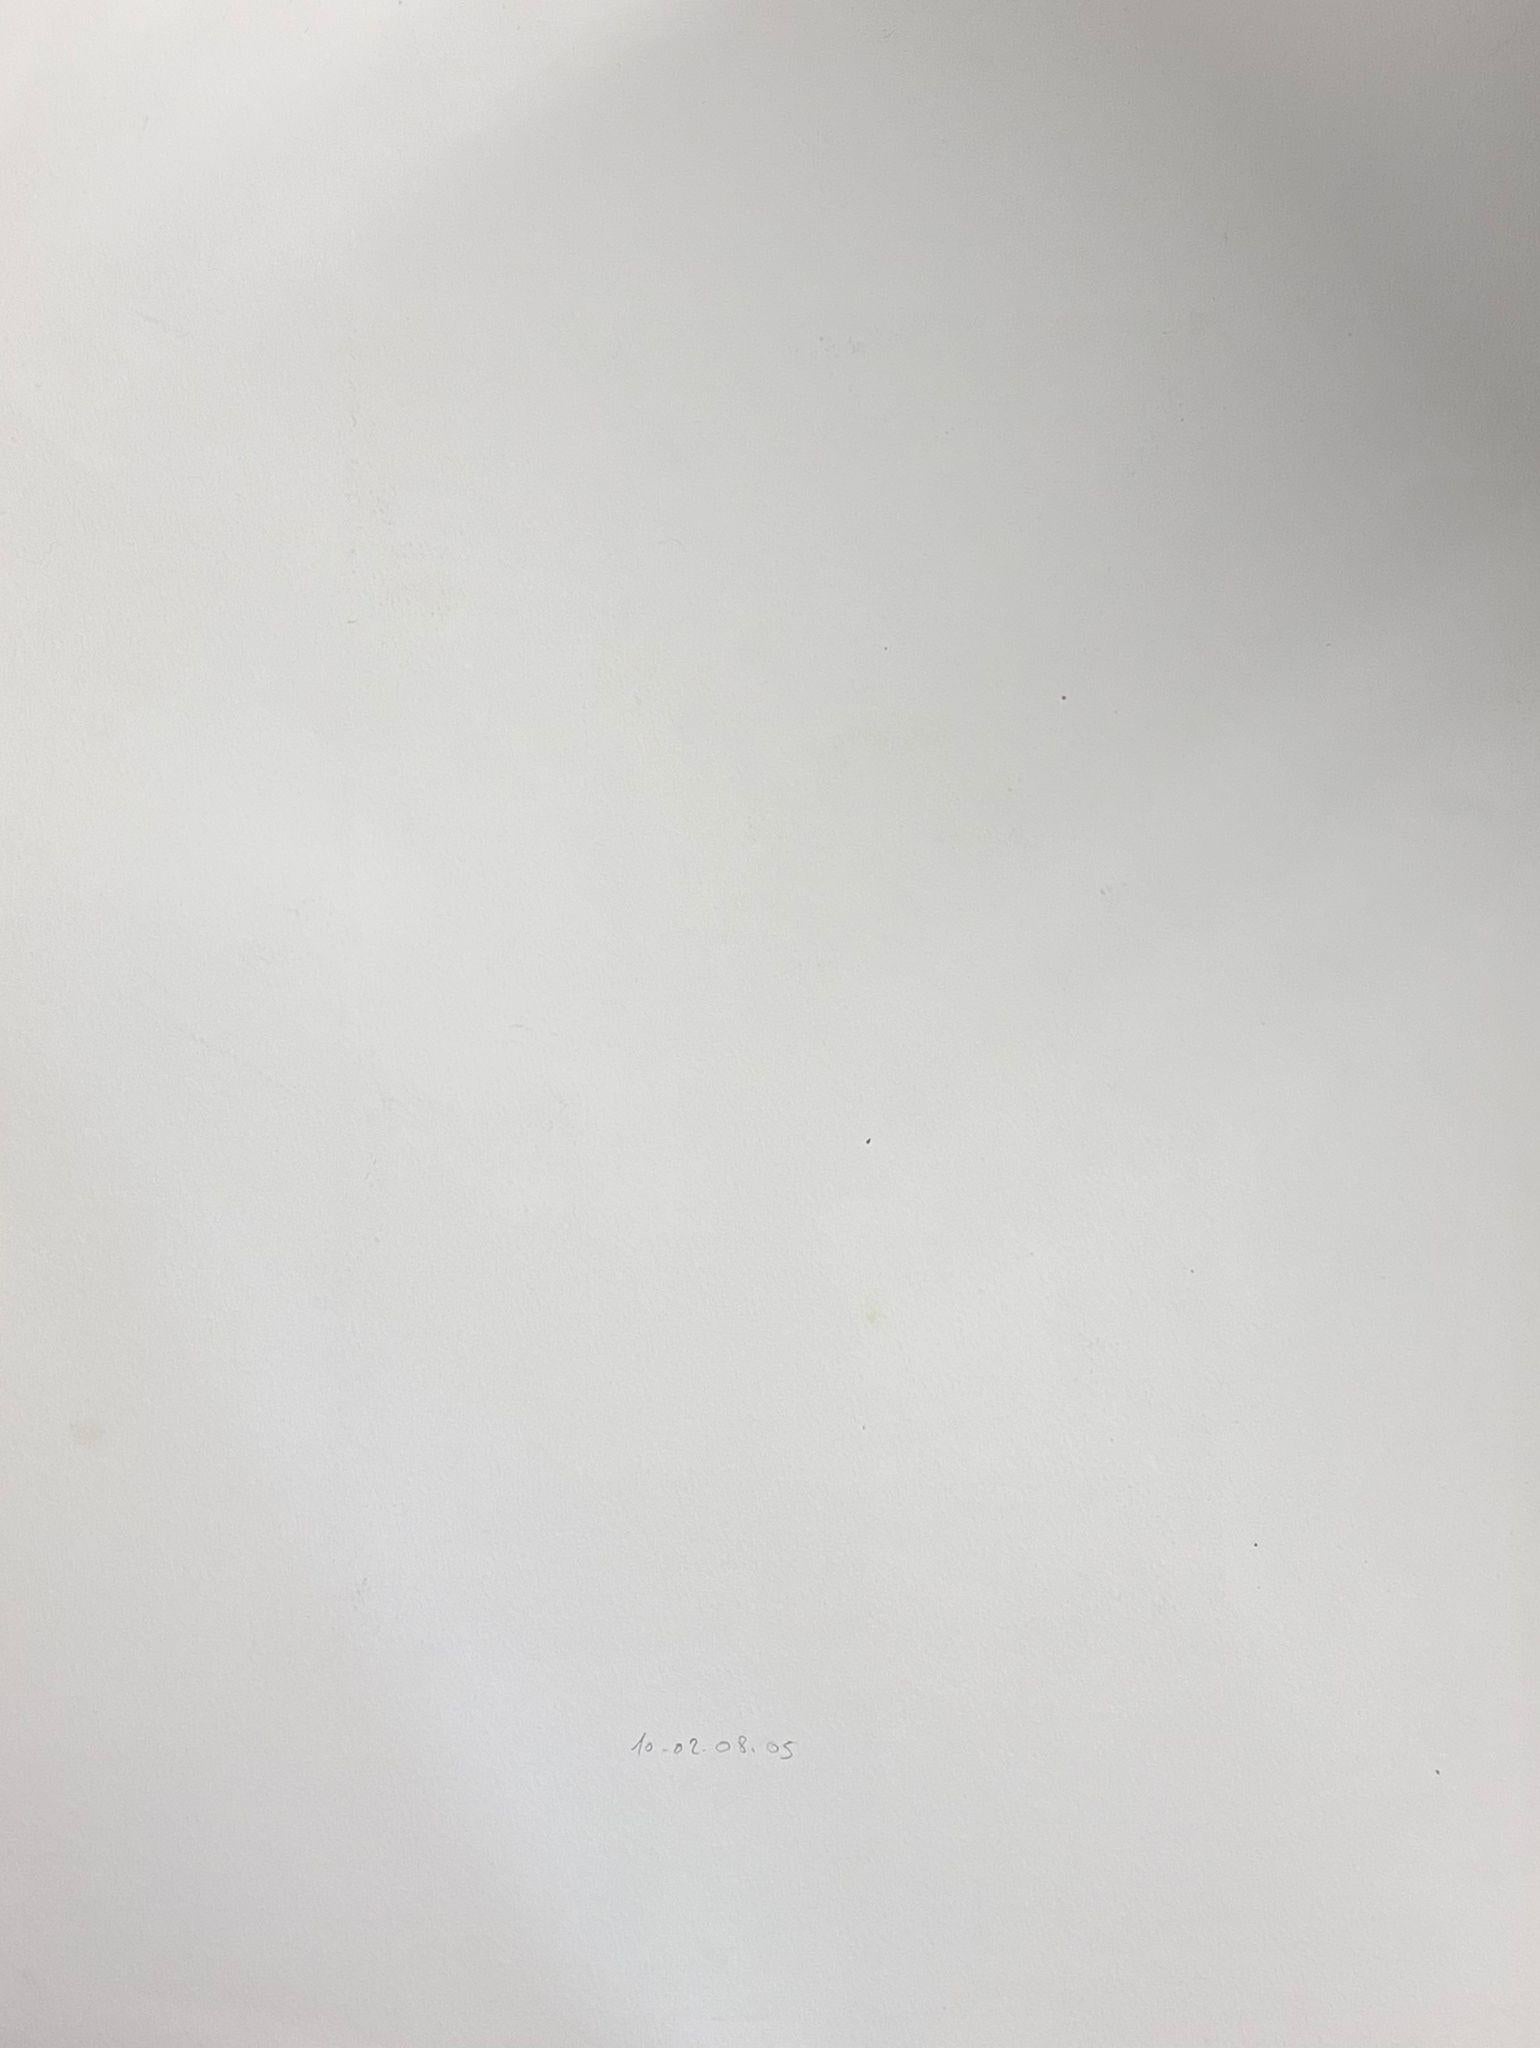 Abstrakt-expressionistische Komposition 
von Jacques COULAIS (1955-2011) Aquarell auf dickem Karton
ungerahmt: 26 x 20 Zoll
Zustand: ausgezeichnet
Provenienz: Alle Gemälde, die wir von diesem Künstler zum Verkauf anbieten, stammen aus dem Studio des